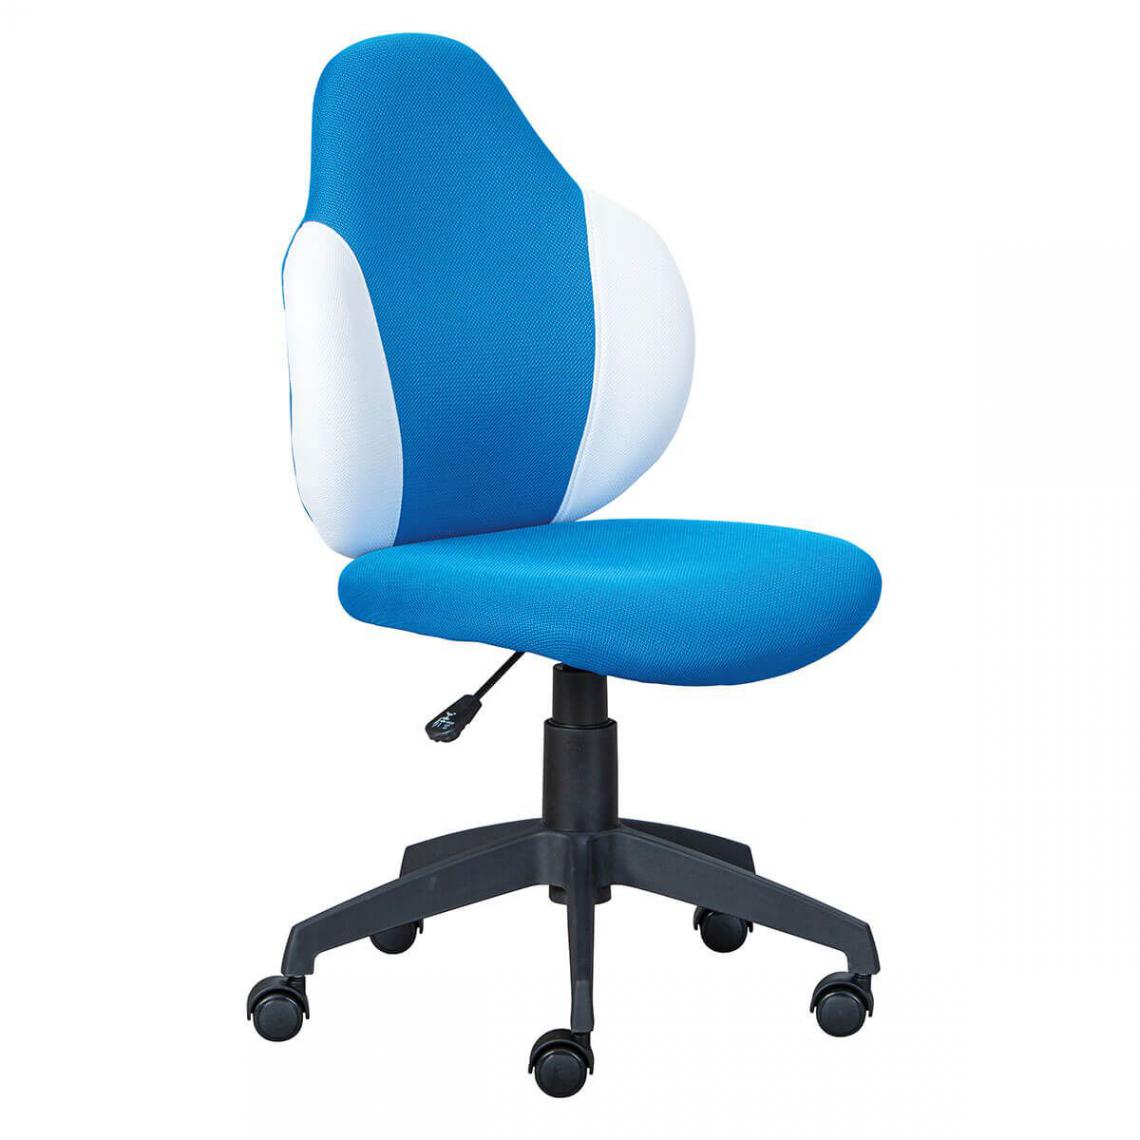 Altobuy - PREZI - Fauteuil Pivotant Bleu pour Enfant - Sièges et fauteuils de bureau